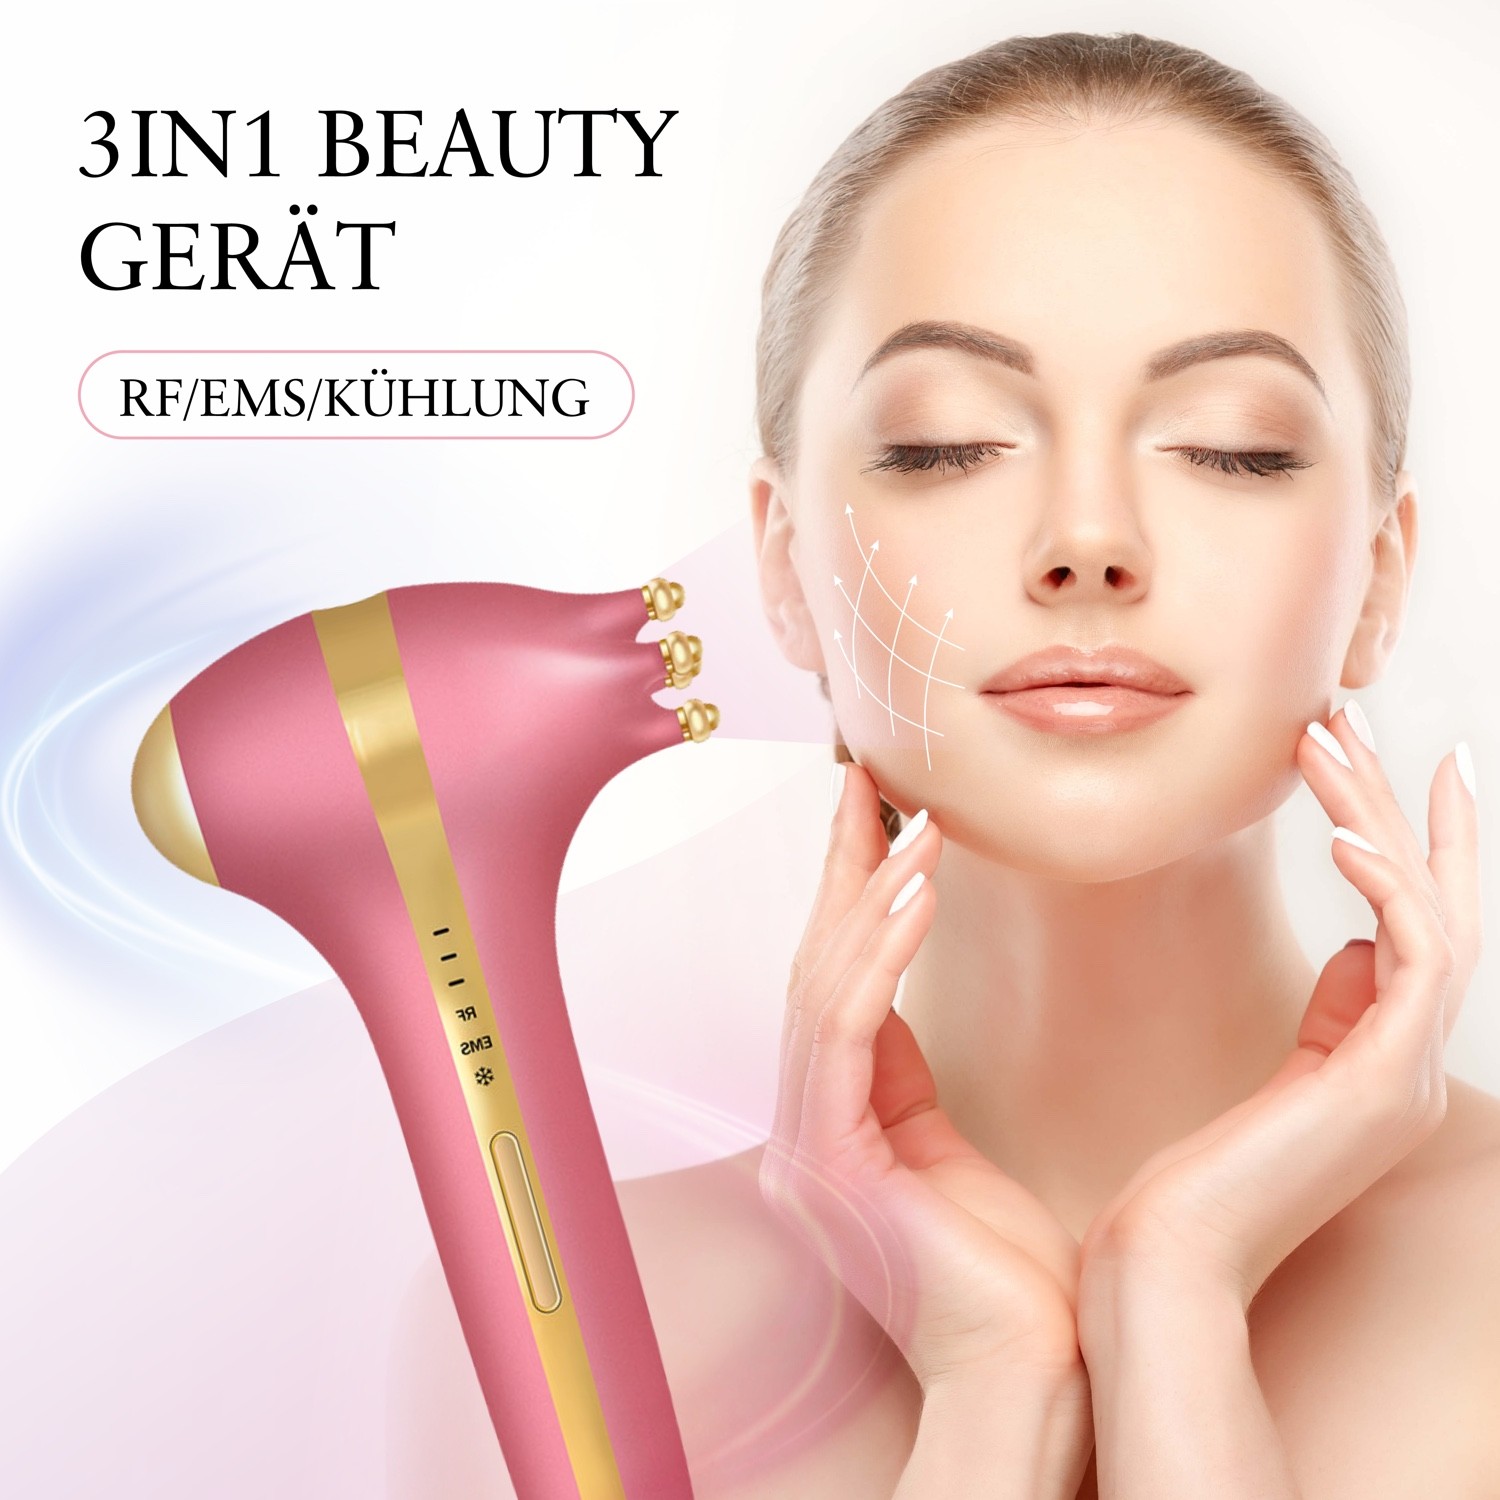 3IN1 Beauty Gerät für die Verjüngung der Haut durch Radiofrequenz und EMS Therapie inklusive Kühlender Funktion | Anti Aging Effekt | Hautstraffung